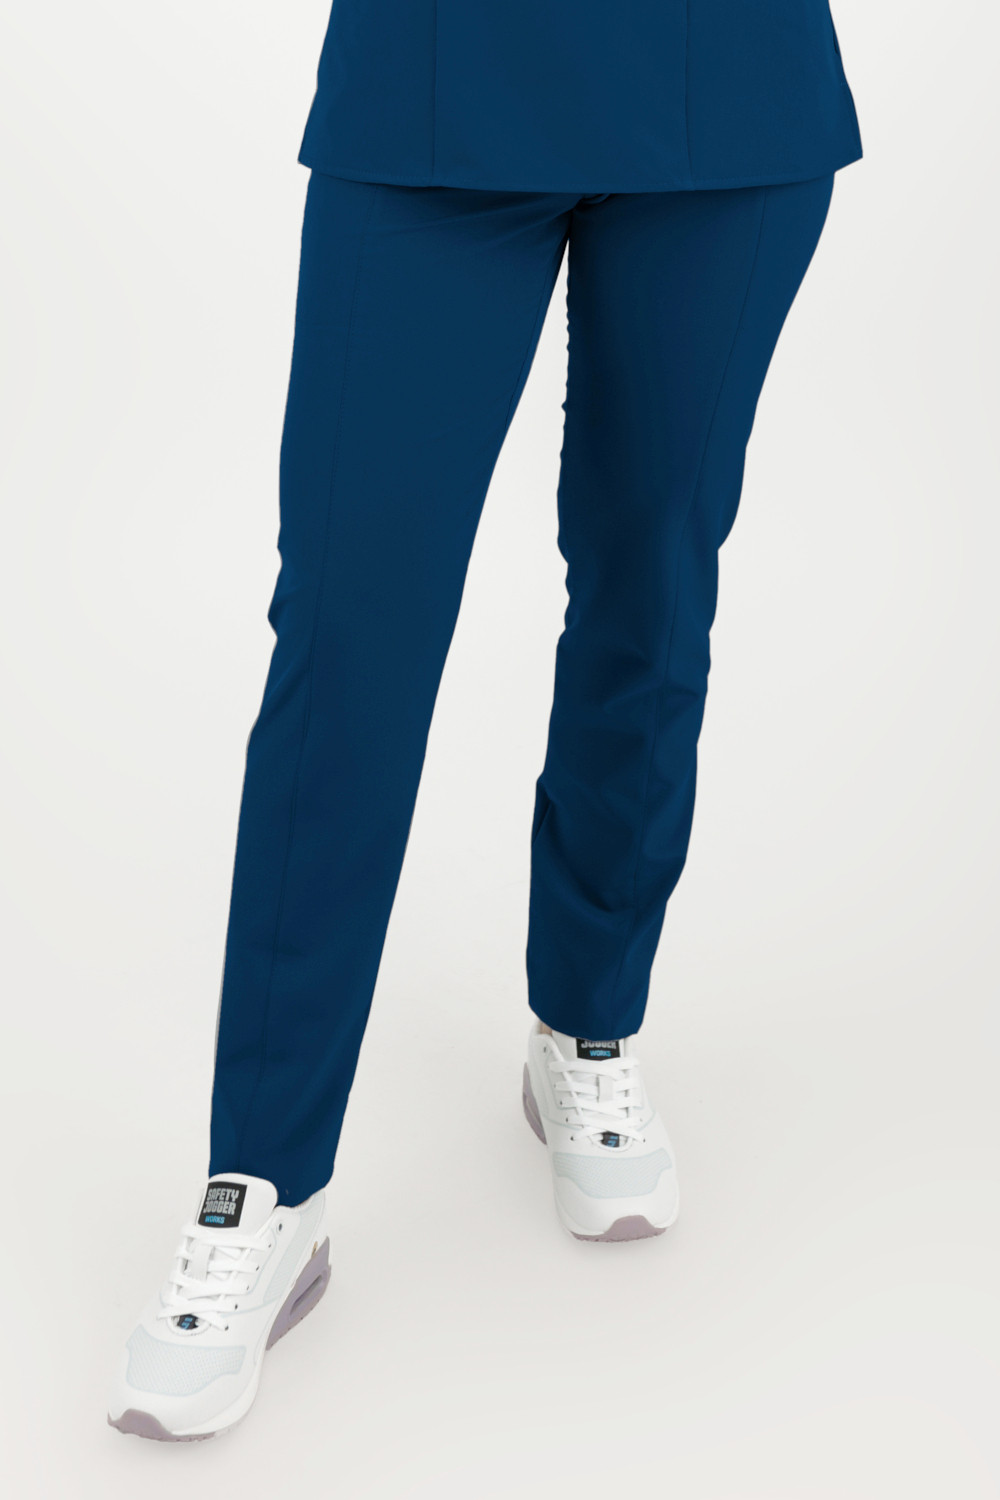 Elastyczne spodnie medyczne damskie / scrubs M-200XC ciemnoniebieski